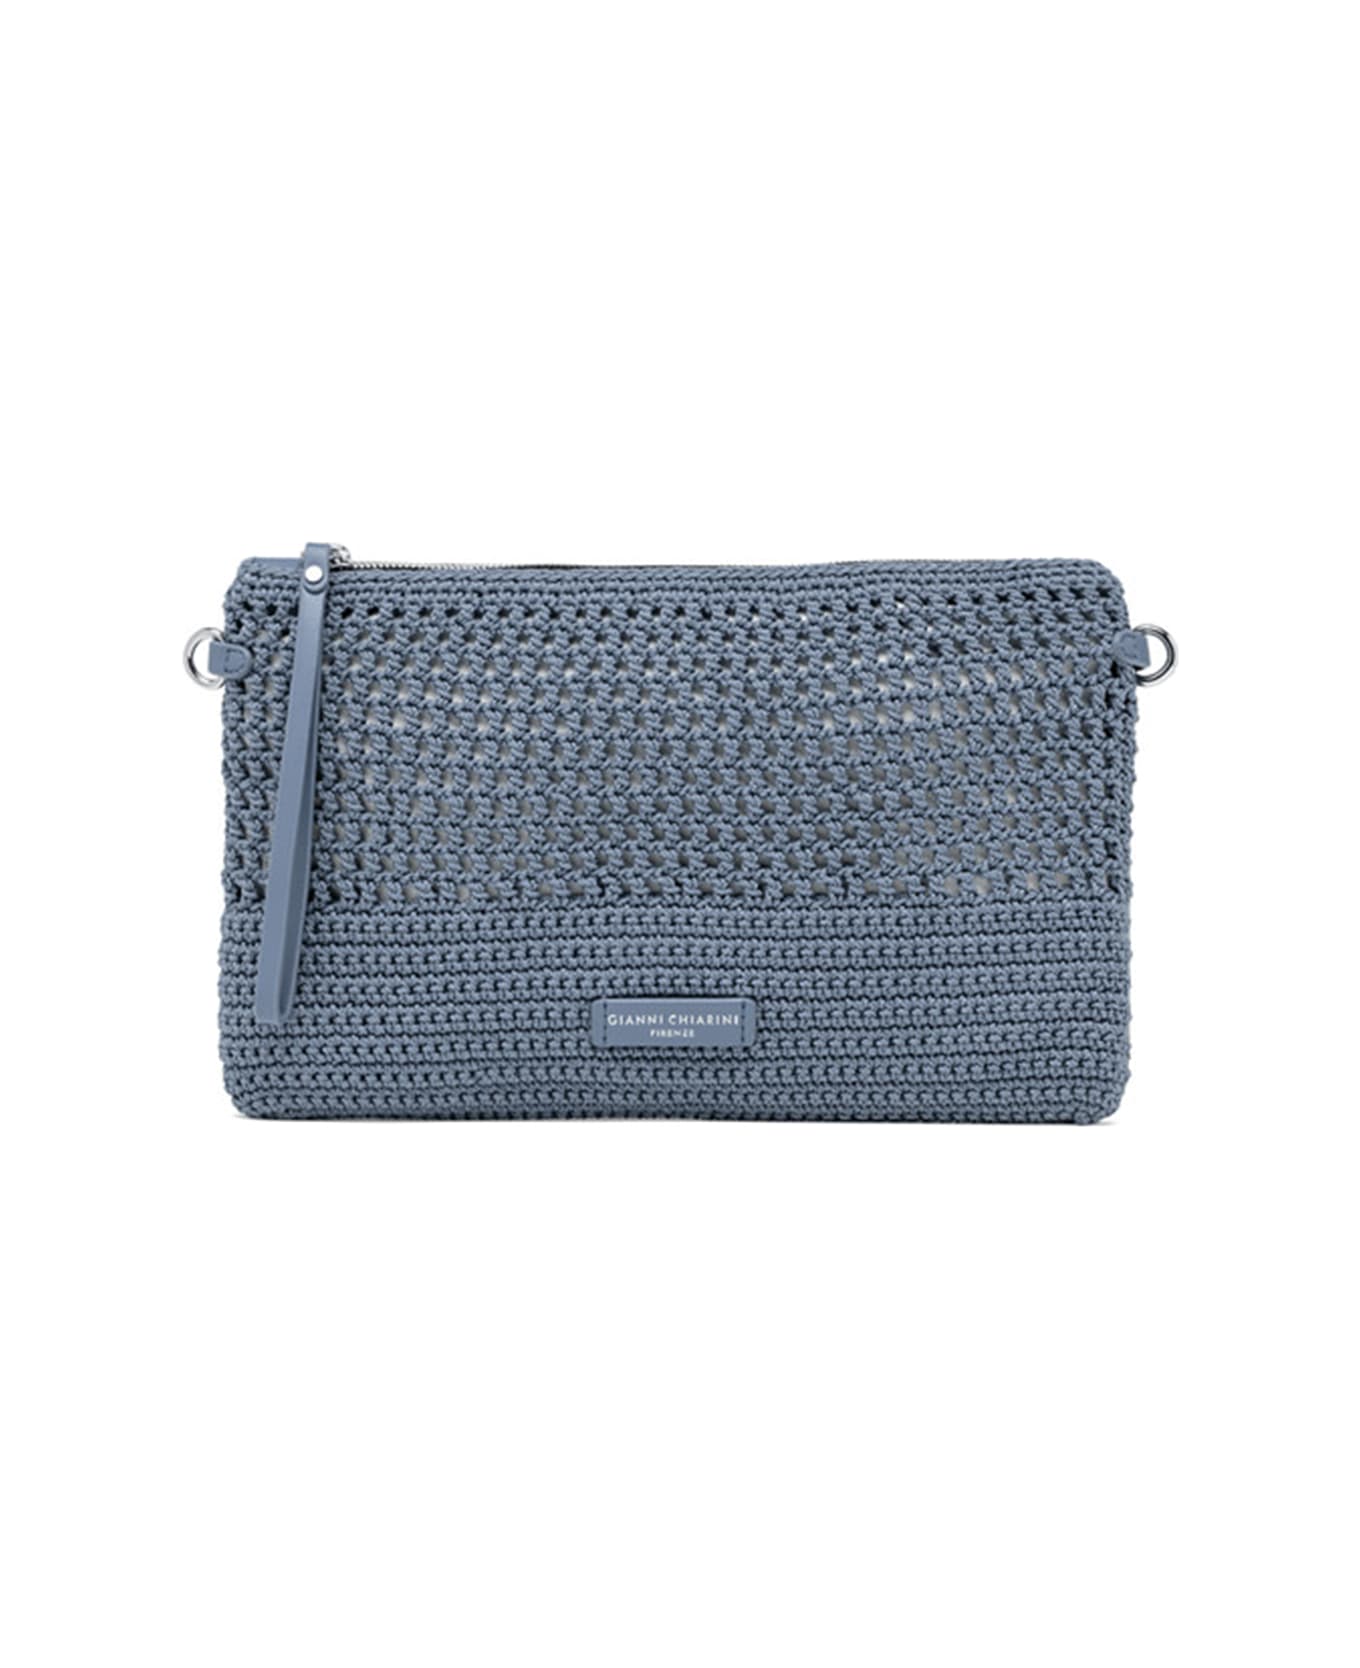 Gianni Chiarini Victoria Blue Clutch Bag In Crochet Fabric - ARTICO